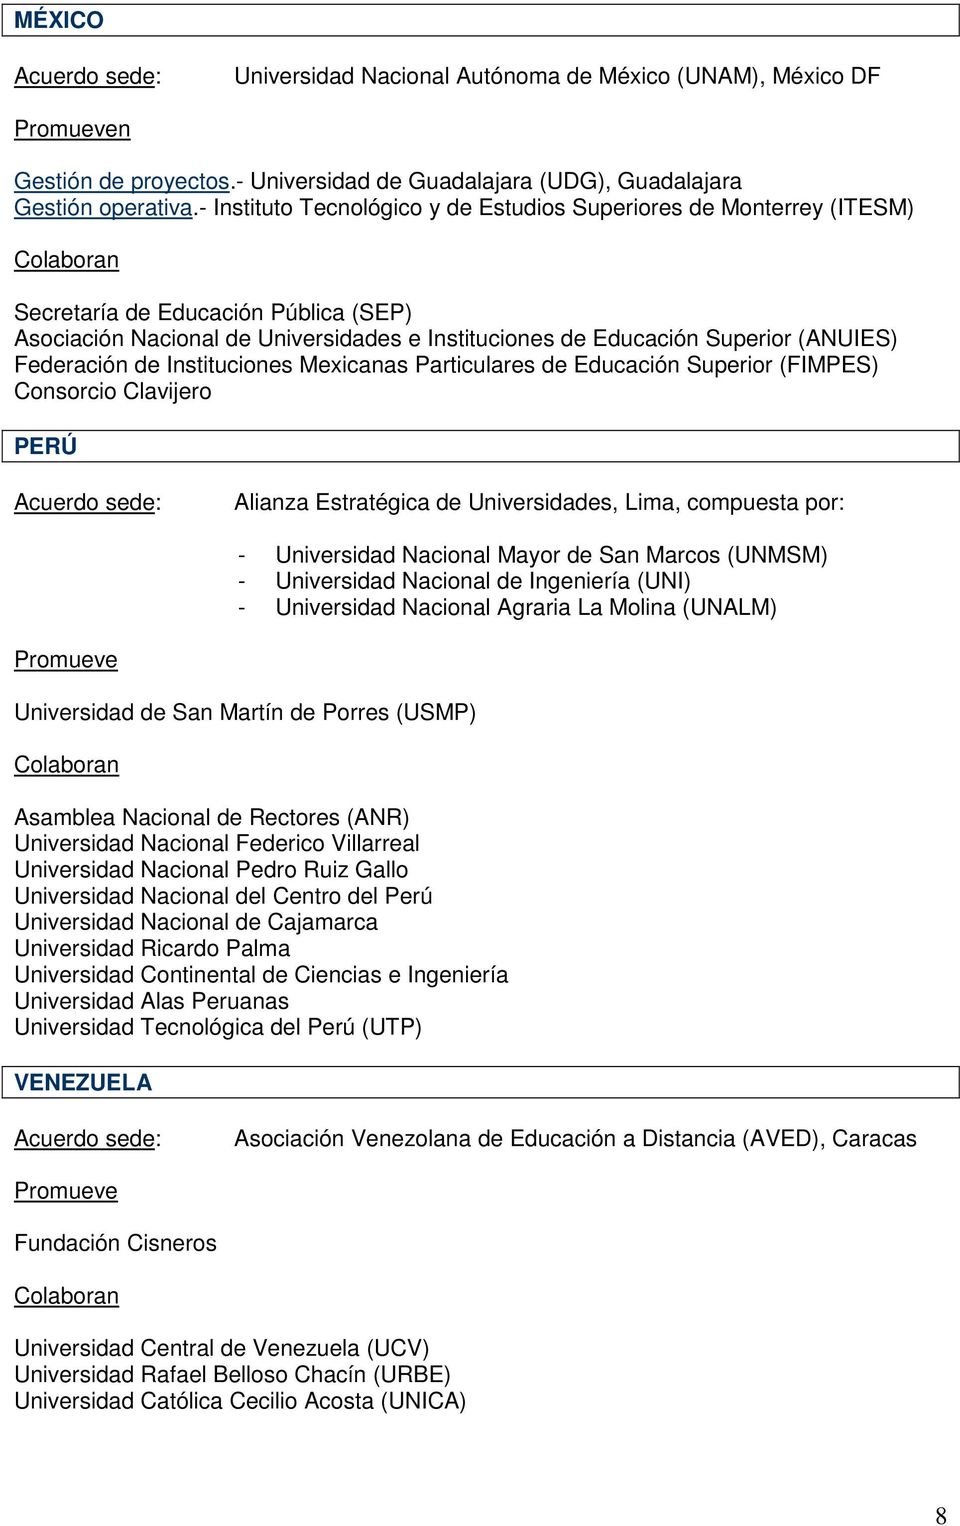 Federación de Instituciones Mexicanas Particulares de Educación Superior (FIMPES) Consorcio Clavijero PERÚ Alianza Estratégica de Universidades, Lima, compuesta por: - Universidad Nacional Mayor de